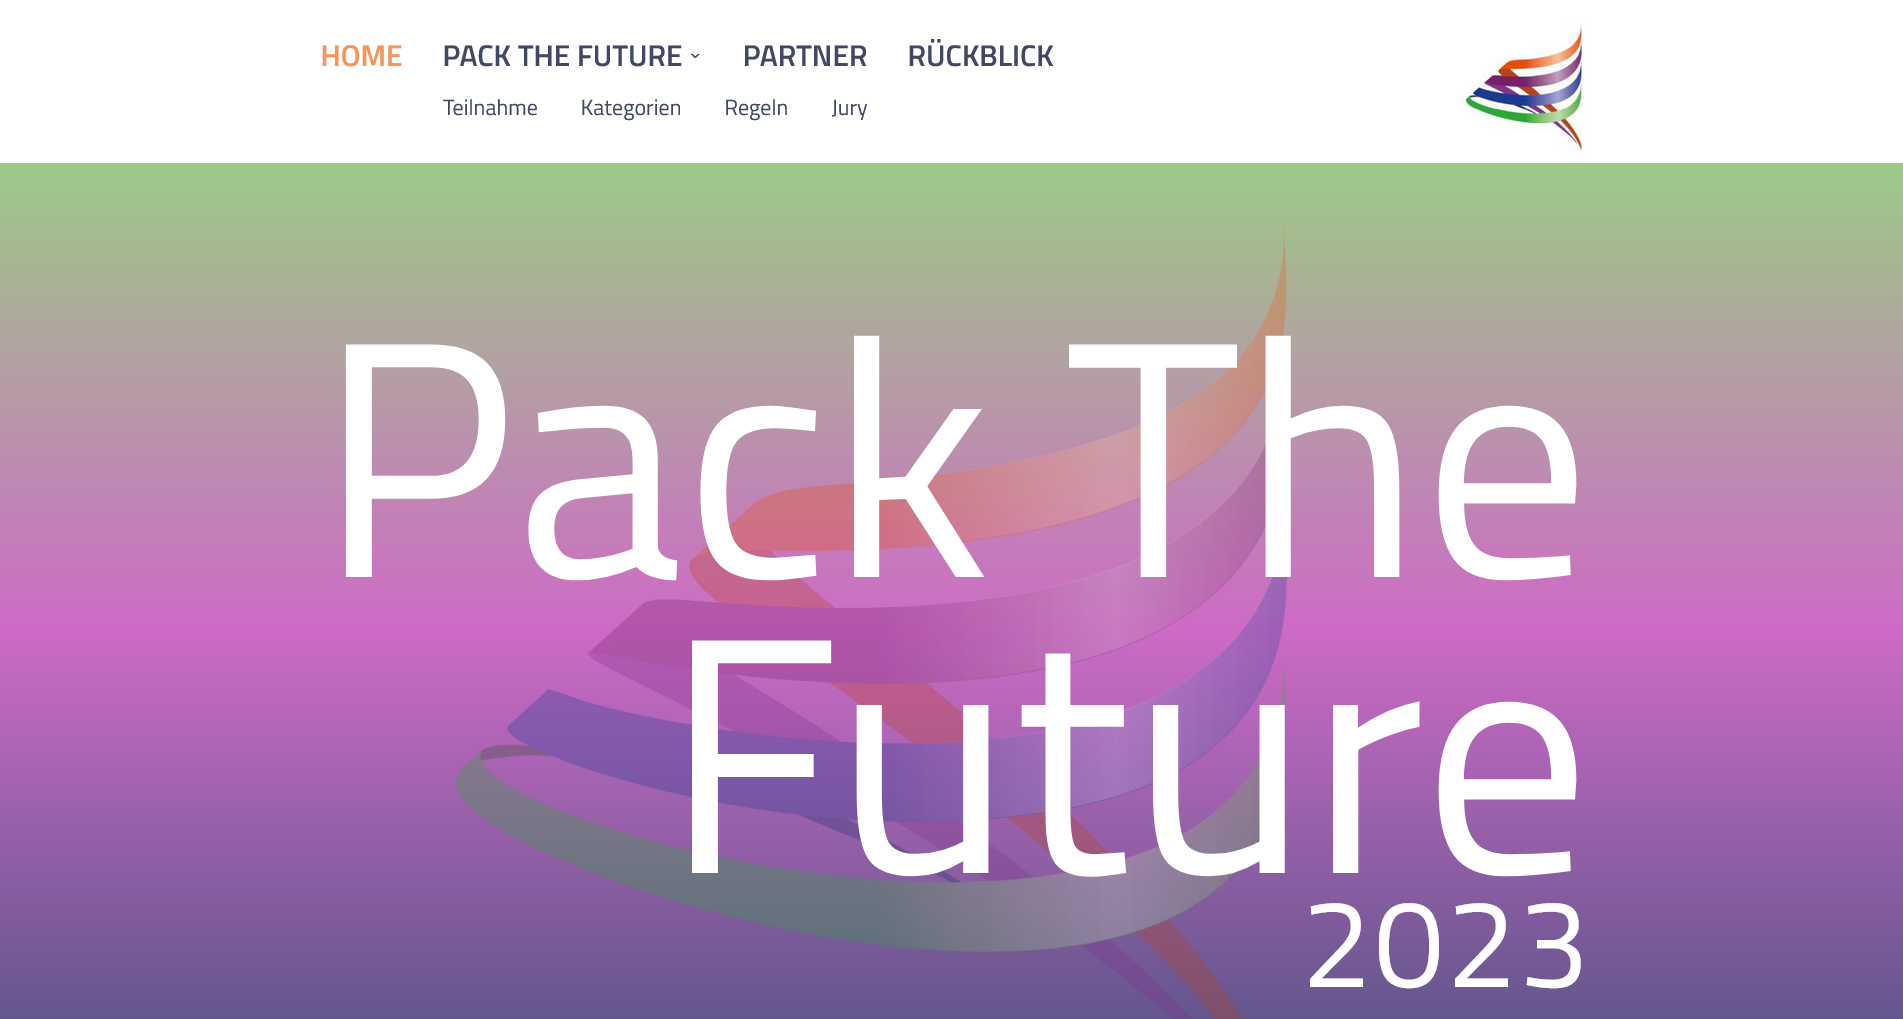 PackTheFuture Award 2023